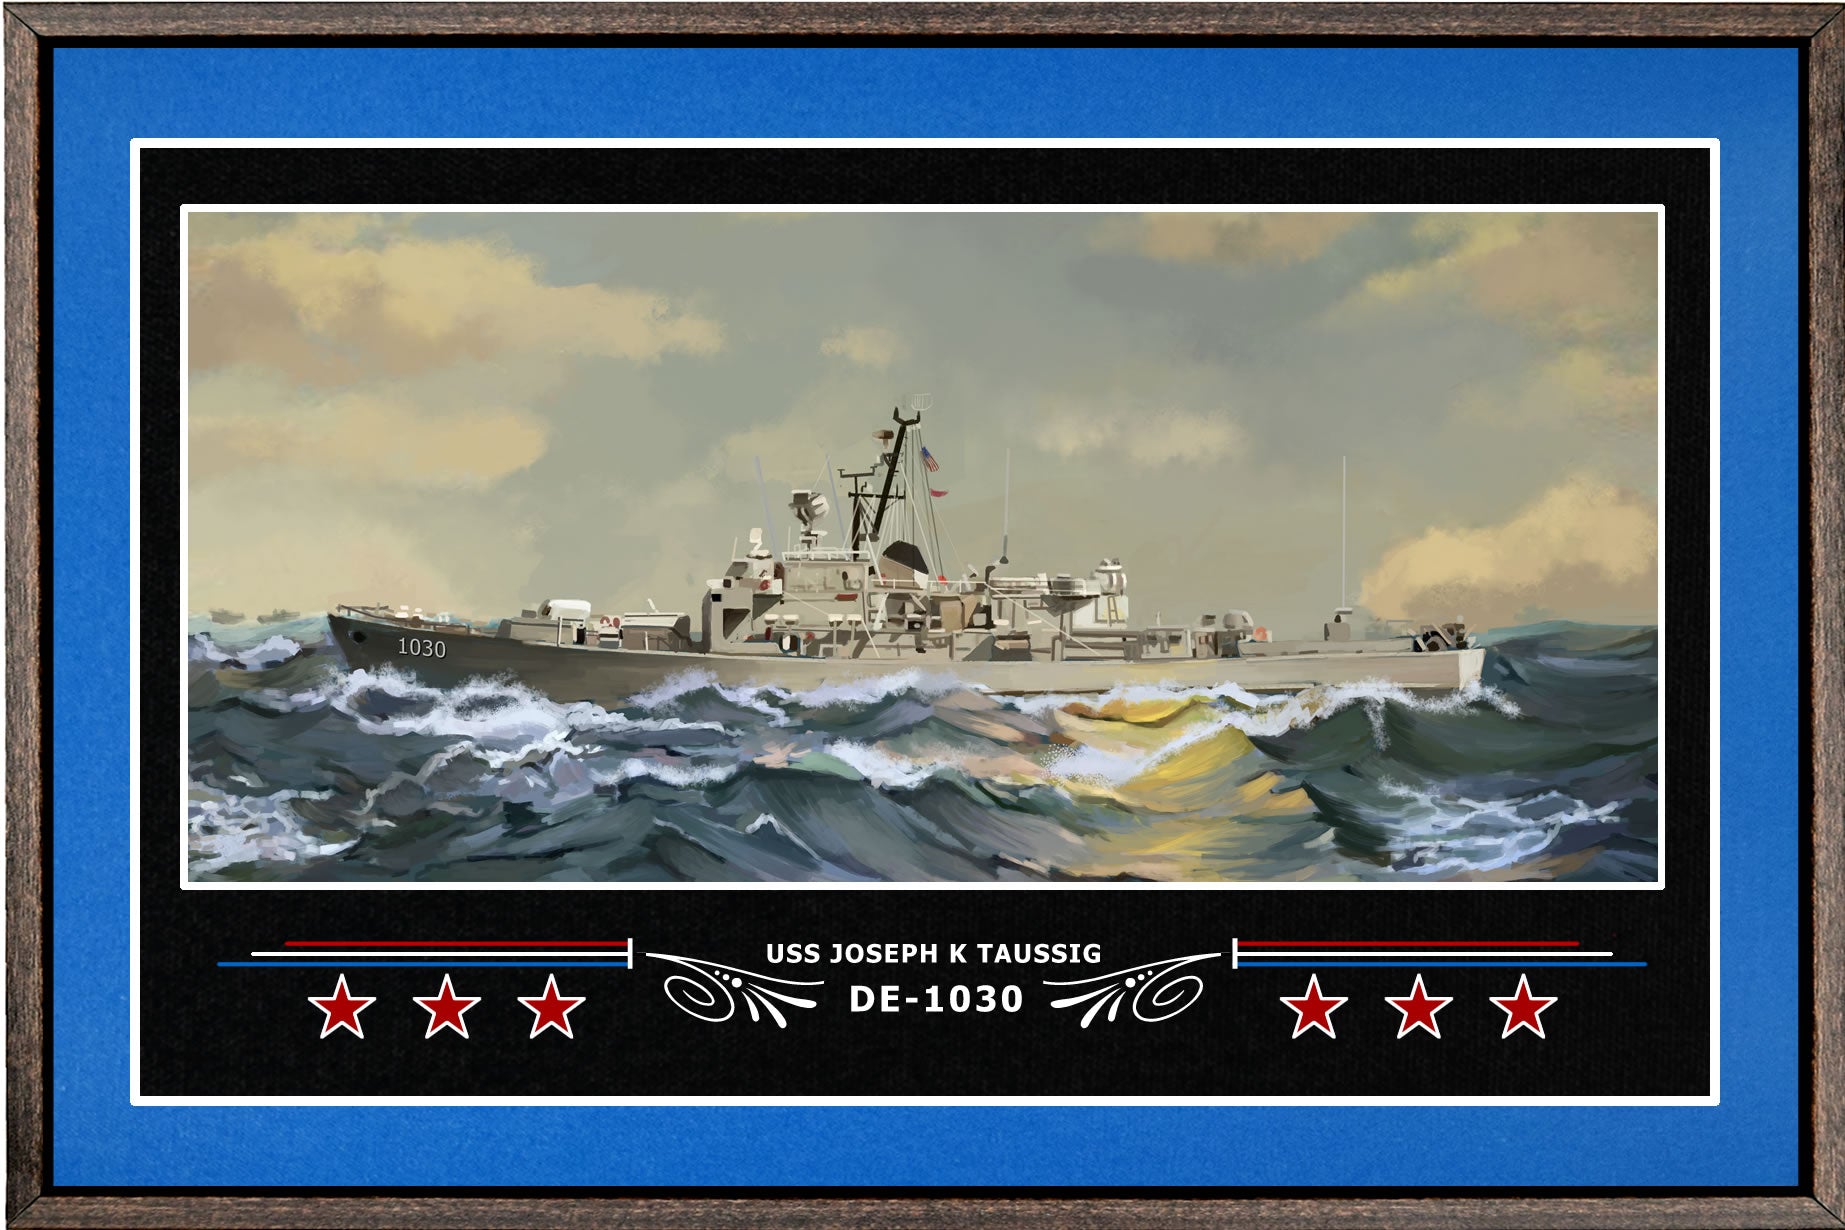 USS JOSEPH K TAUSSIG DE 1030 BOX FRAMED CANVAS ART BLUE